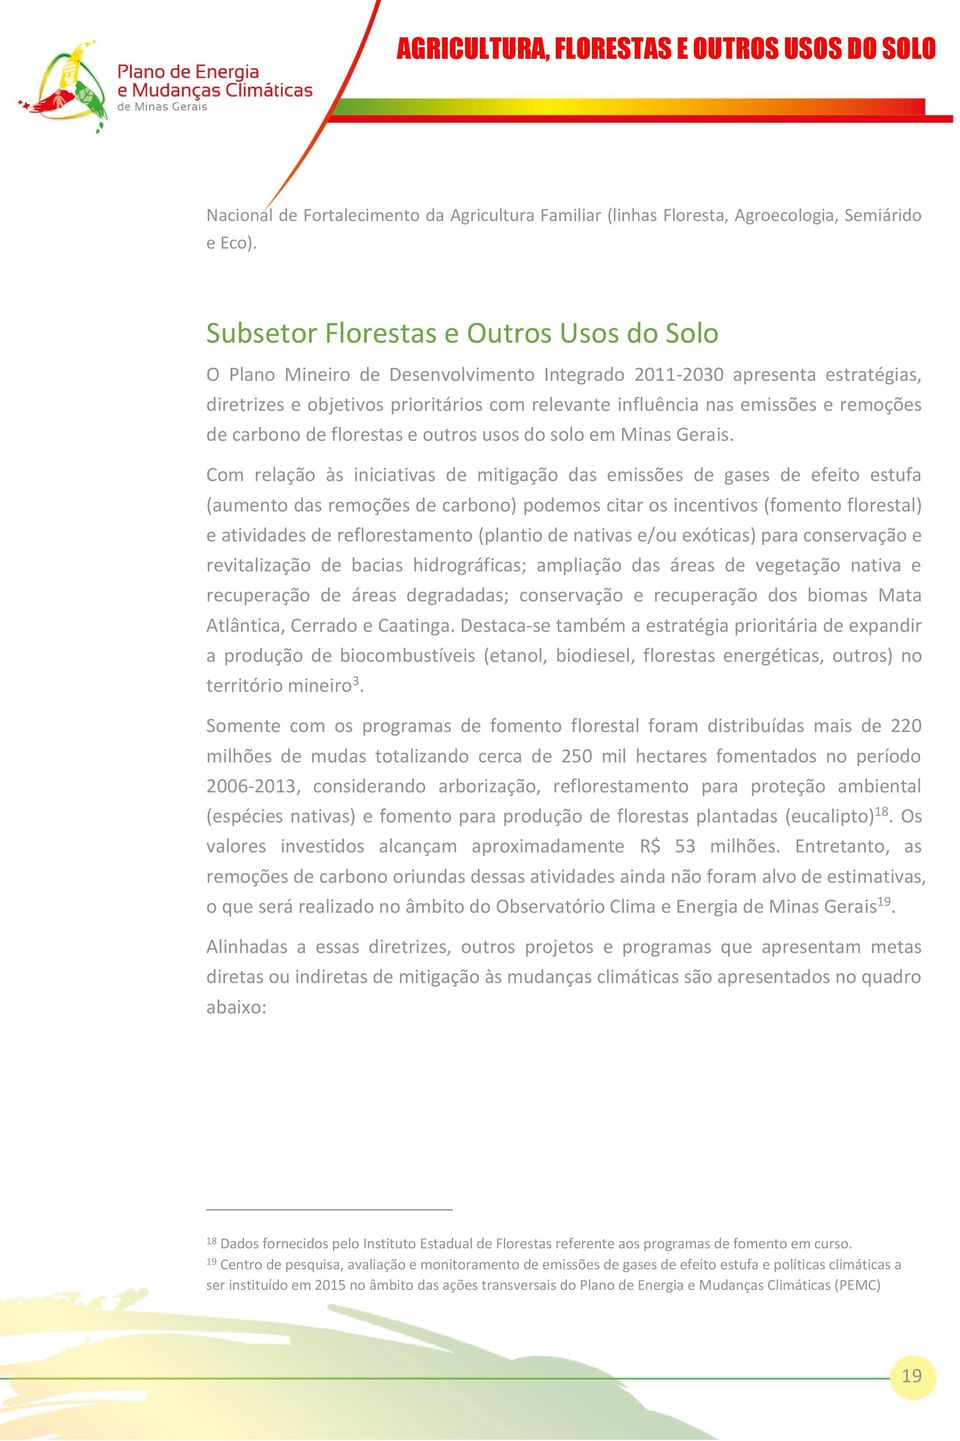 remoções de carbono de florestas e outros usos do solo em Minas Gerais.